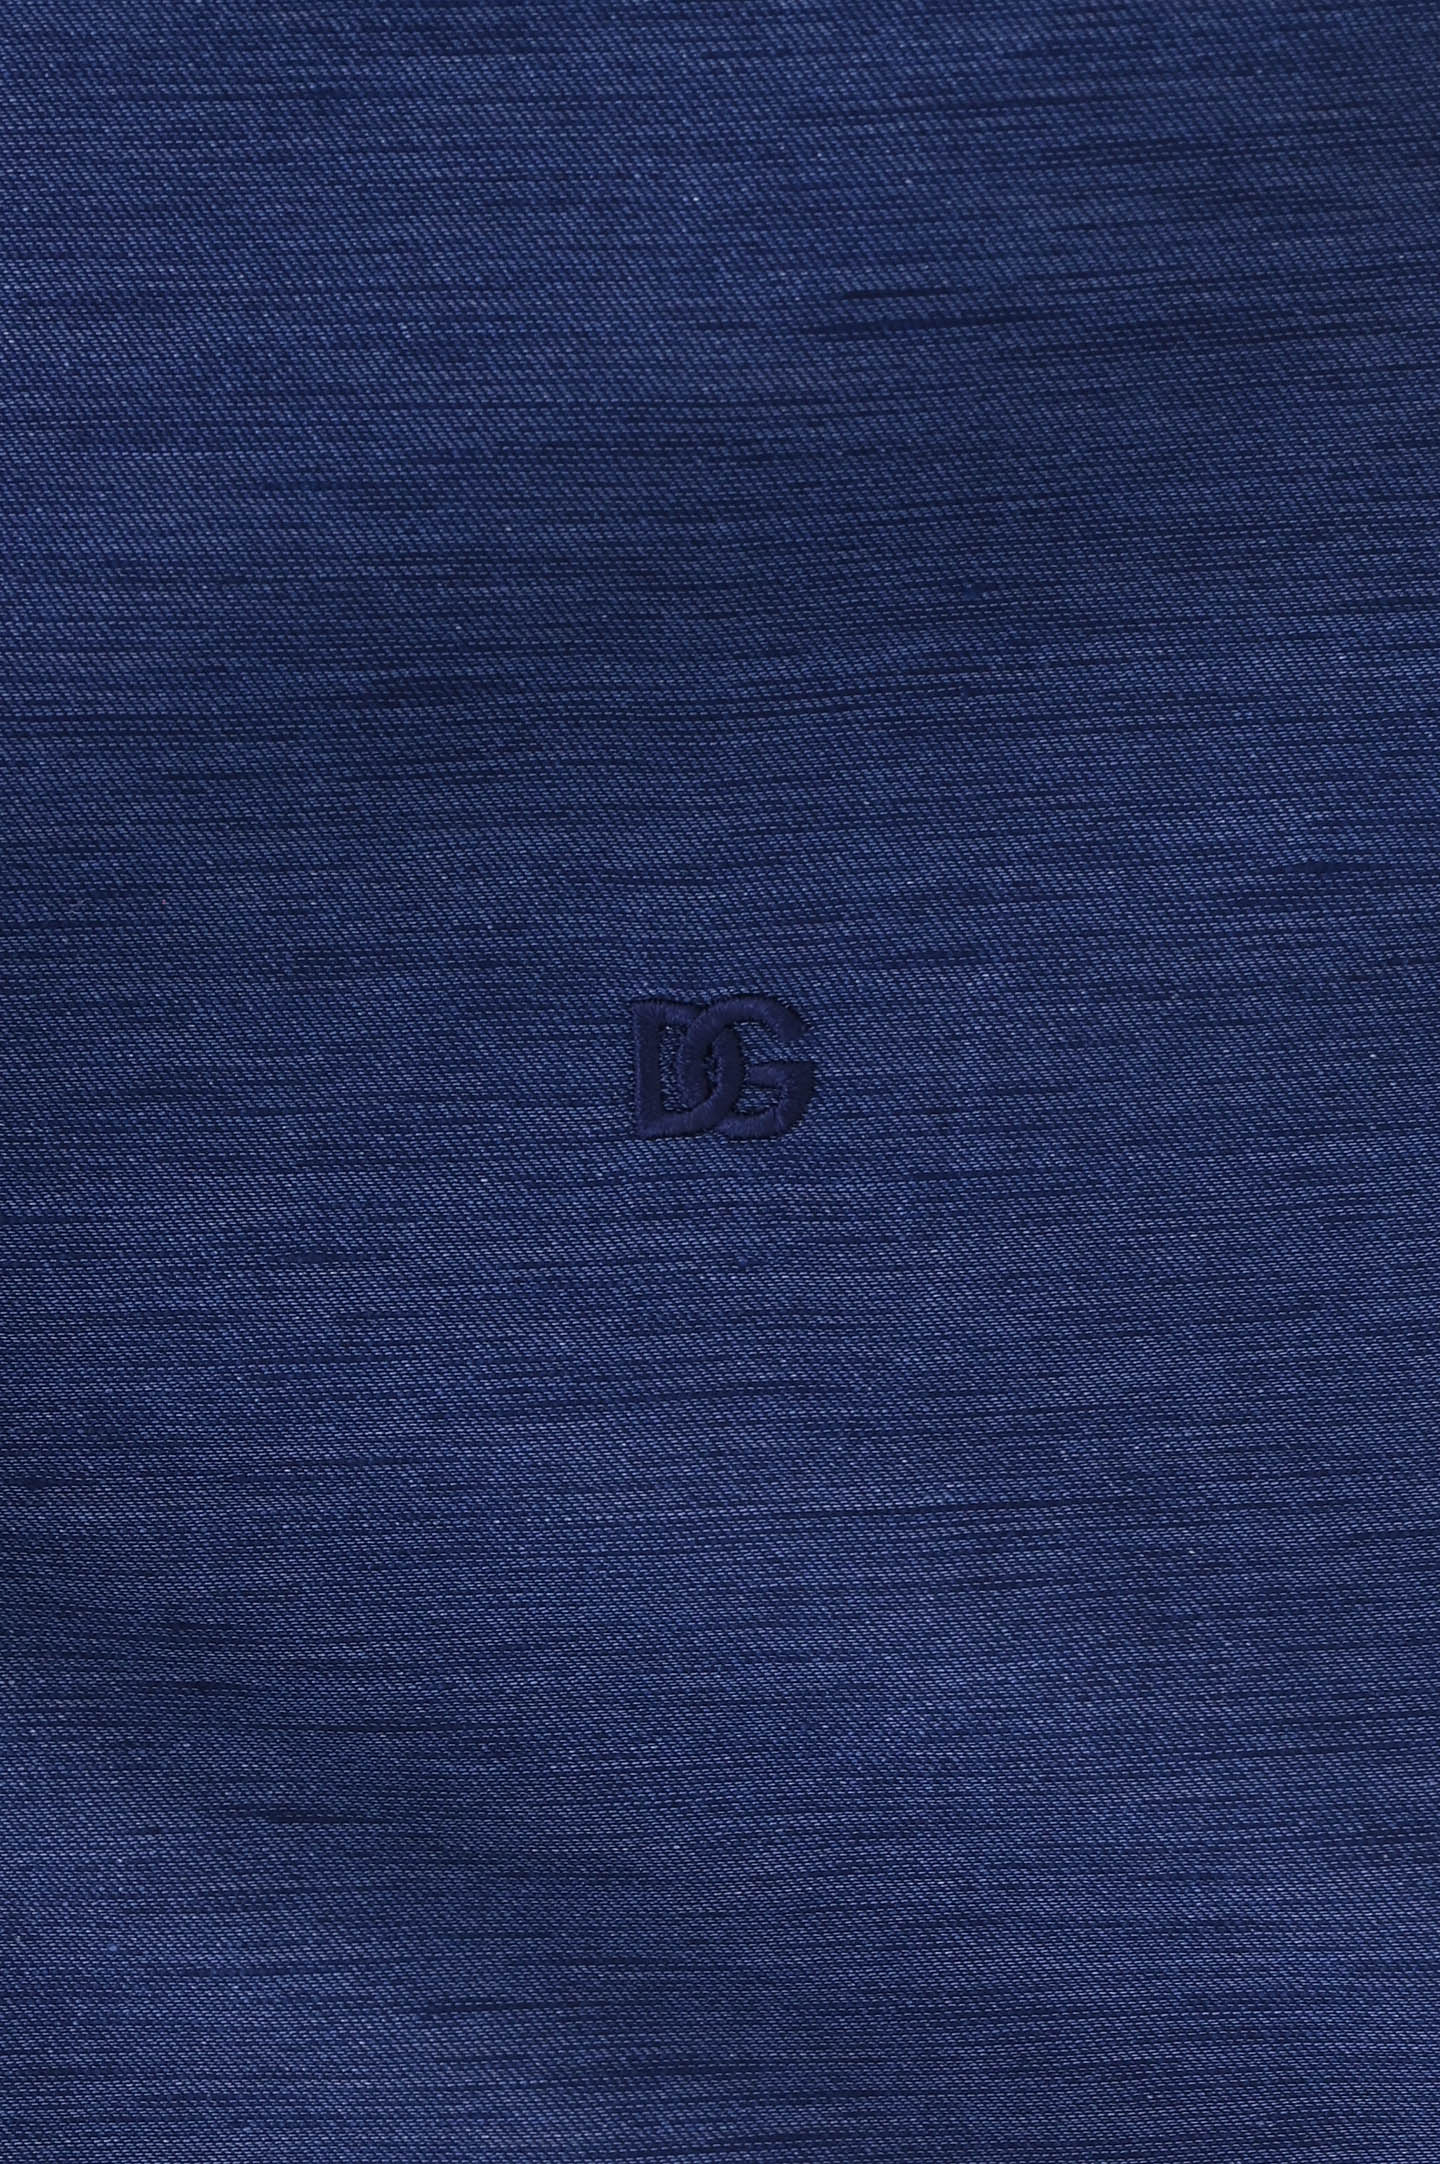 Рубашка из хлопка и льна DOLCE & GABBANA G5LH9Z FUTB6, цвет: Синий, Мужской